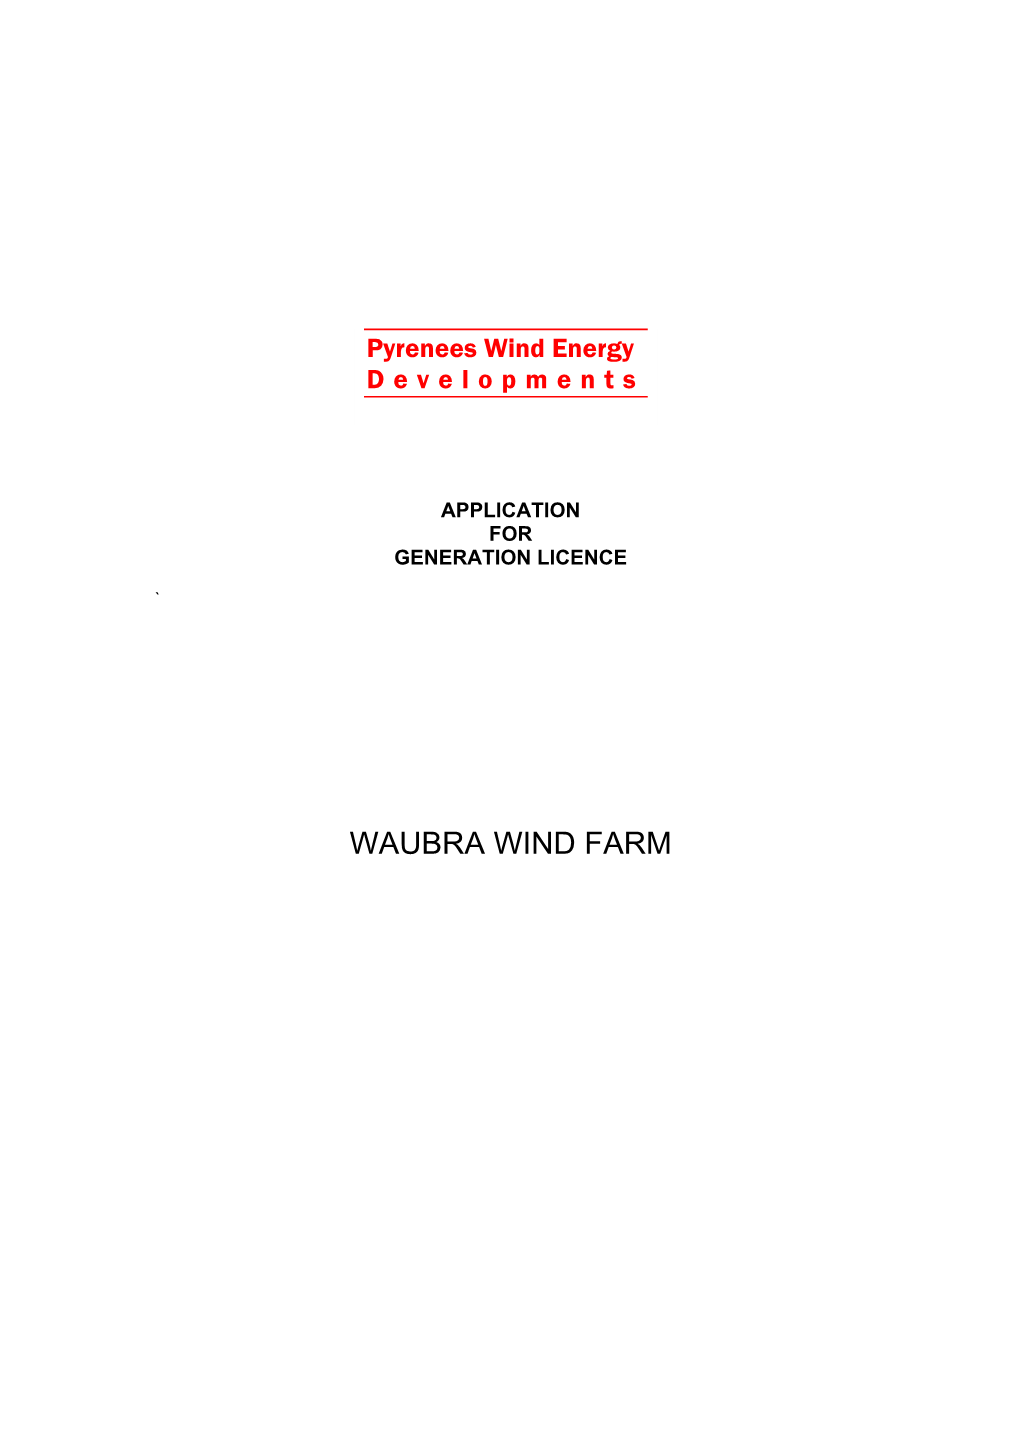 WAUBRA WIND FARM Pyrenees Wind Energy Developments